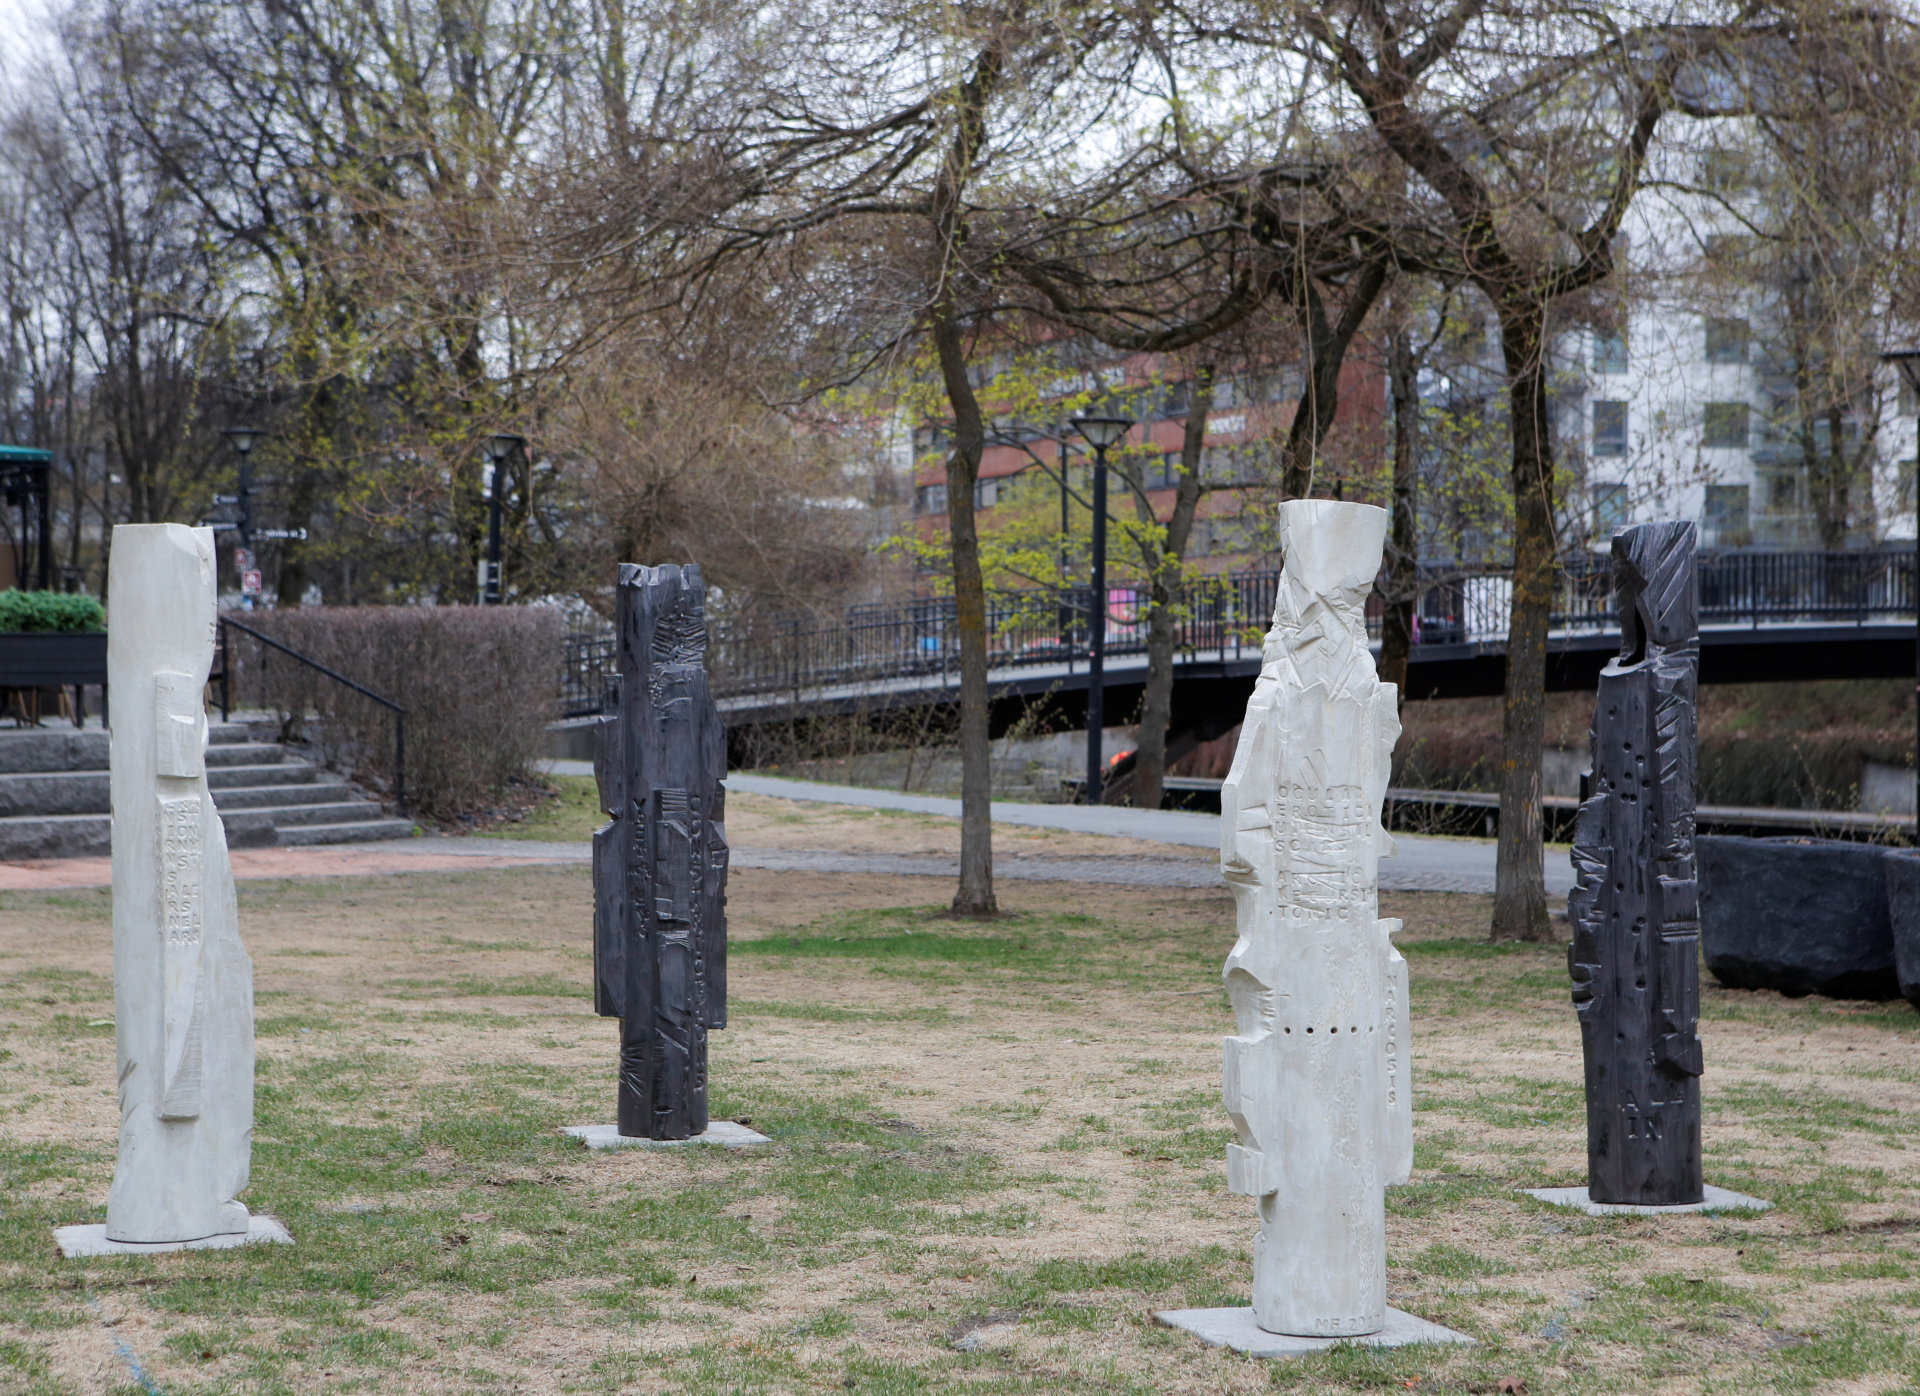 De fire skulpturene som står i parken utenfor Bærum kunstforening får symbolsk tyngde i samspill med omgivelsene.